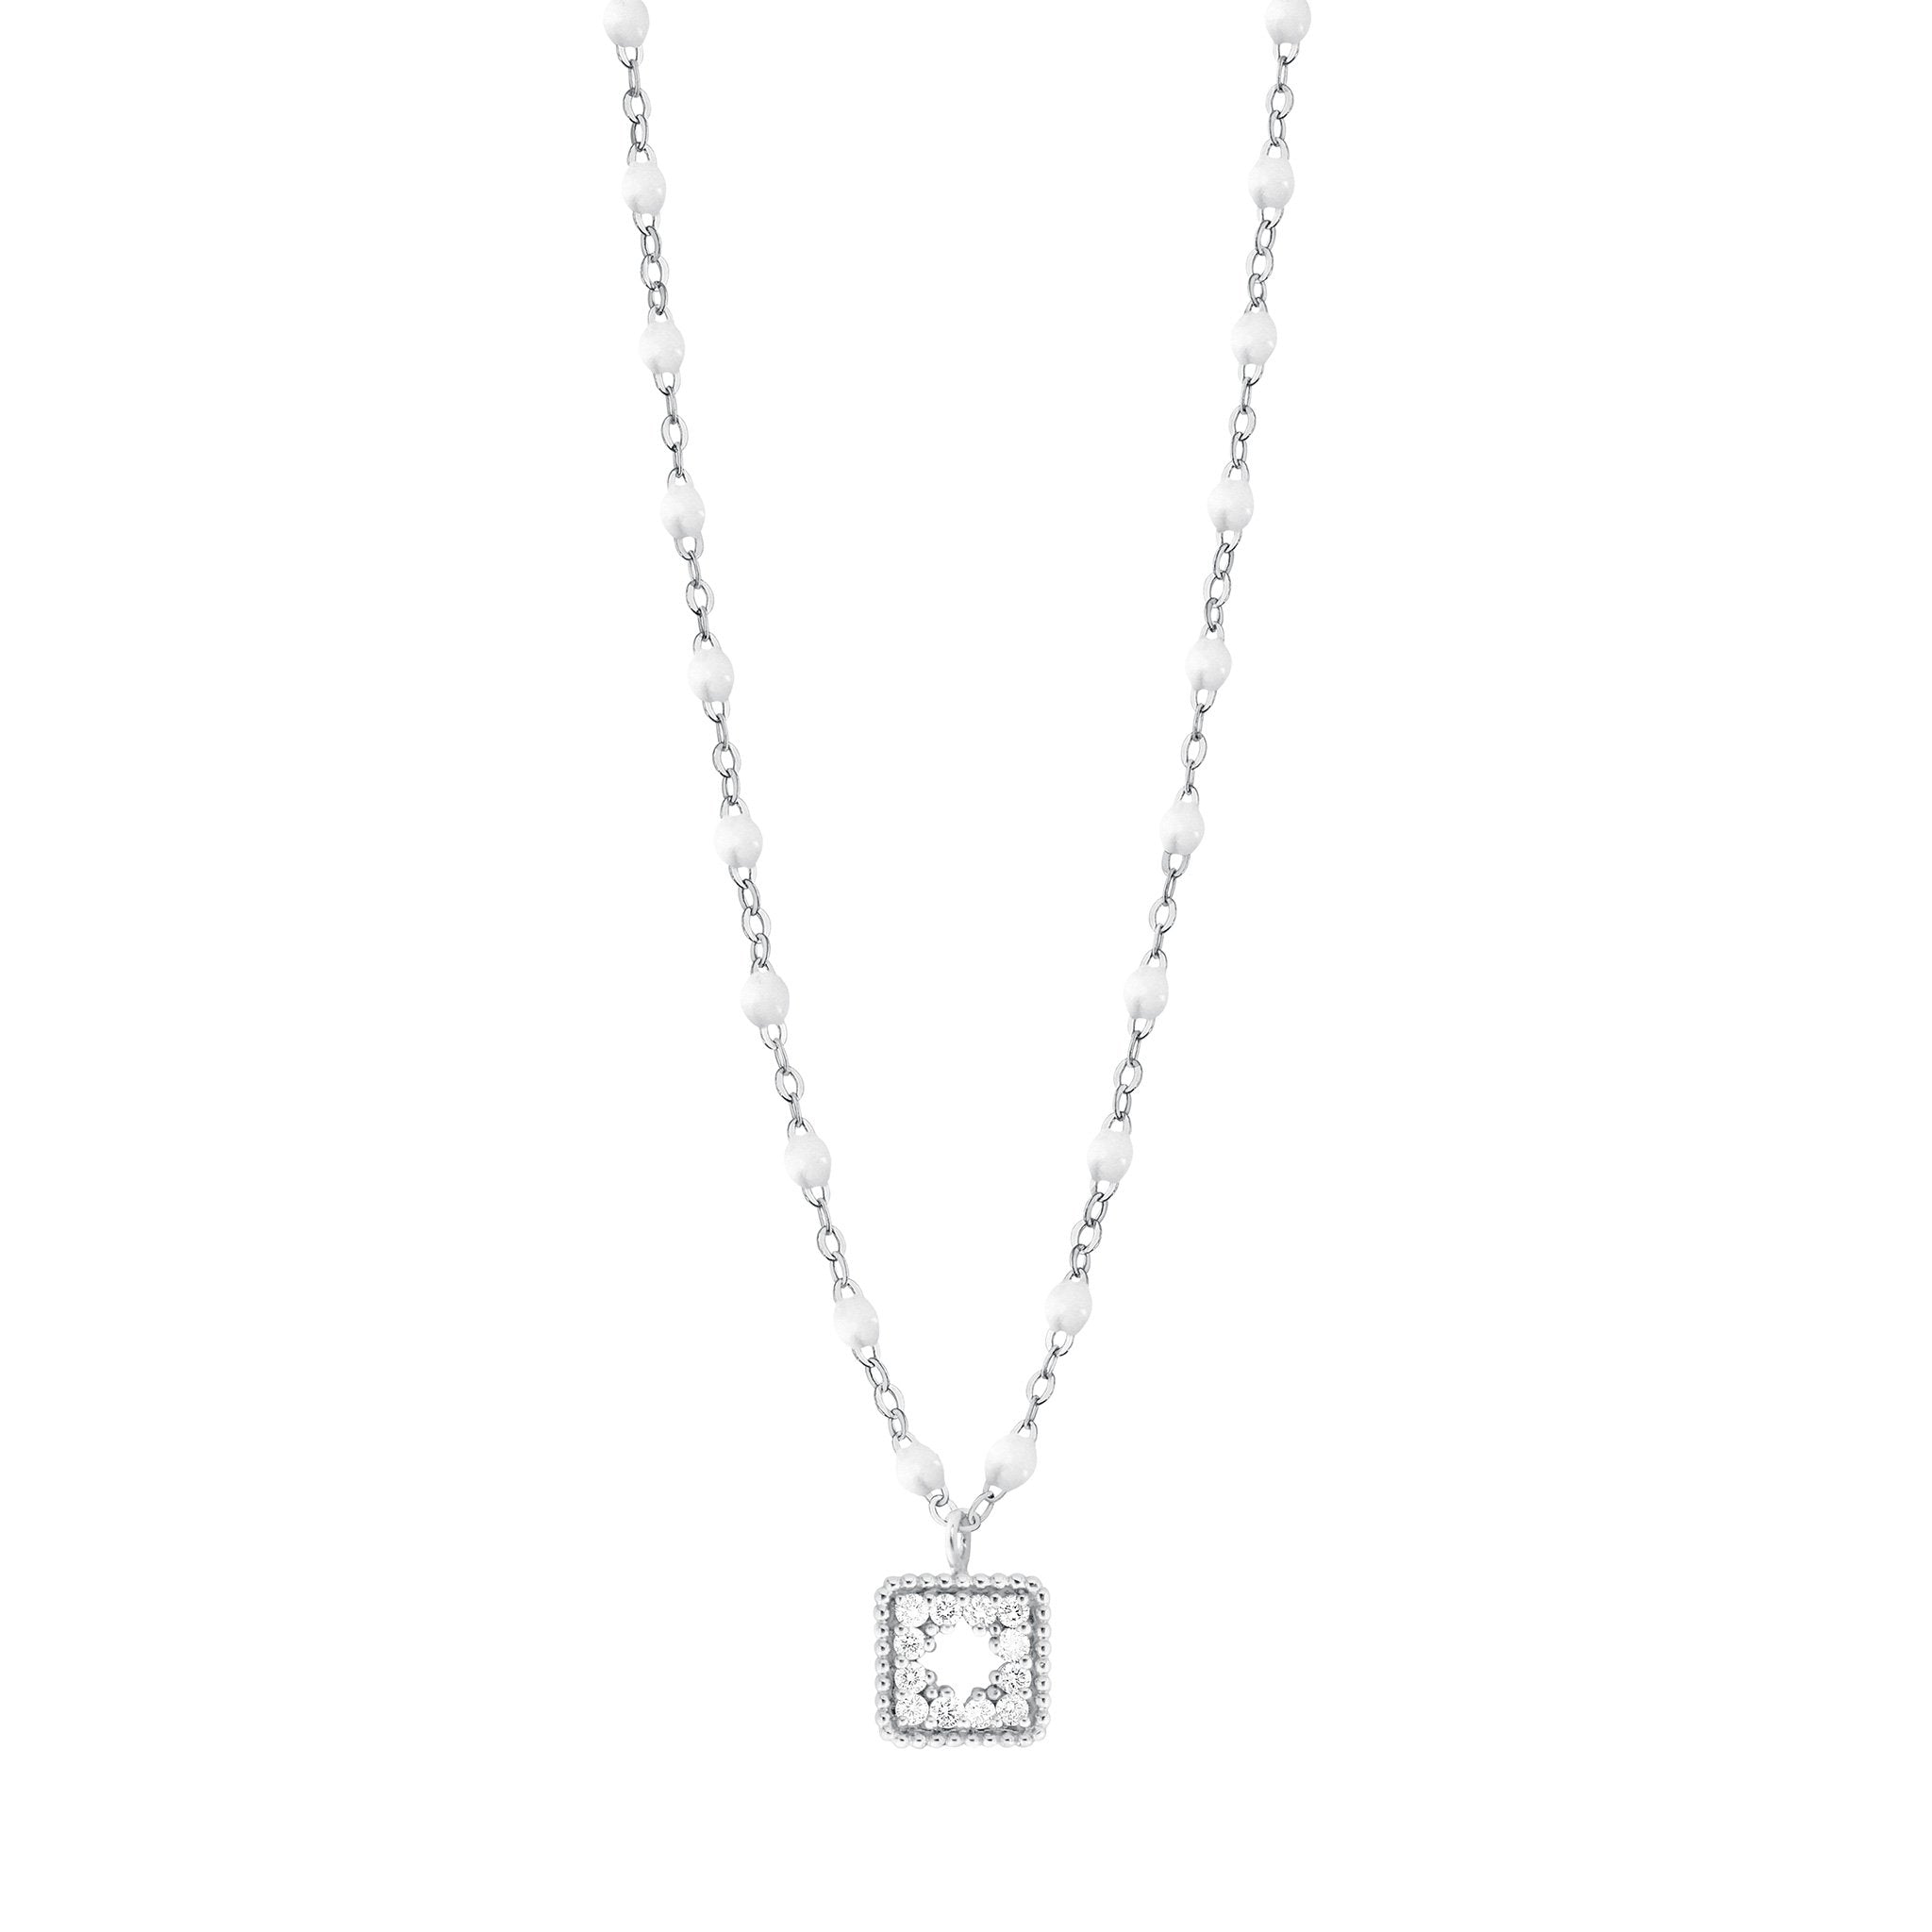 Collier blanc Trésor, diamants, or blanc, 42 cm pirate Référence :  b1tr001g0142di -1